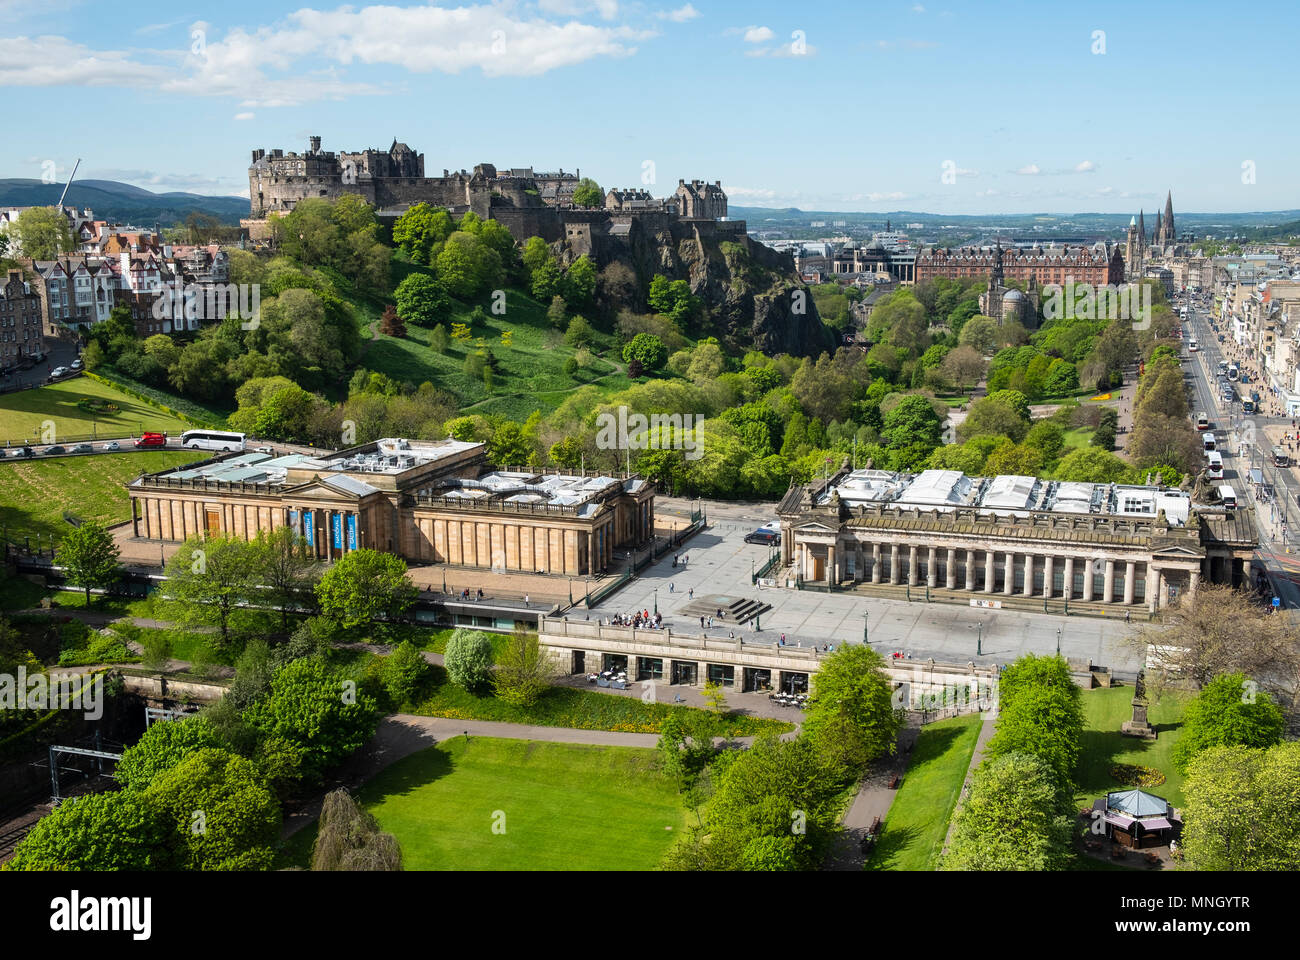 Skyline von Princes Street Gardens und Edinburgh Castle, die Scottish National Gallery (L) und der Royal Scottish Academy (R) in Edinburgh, Schottland, Großbritannien Stockfoto